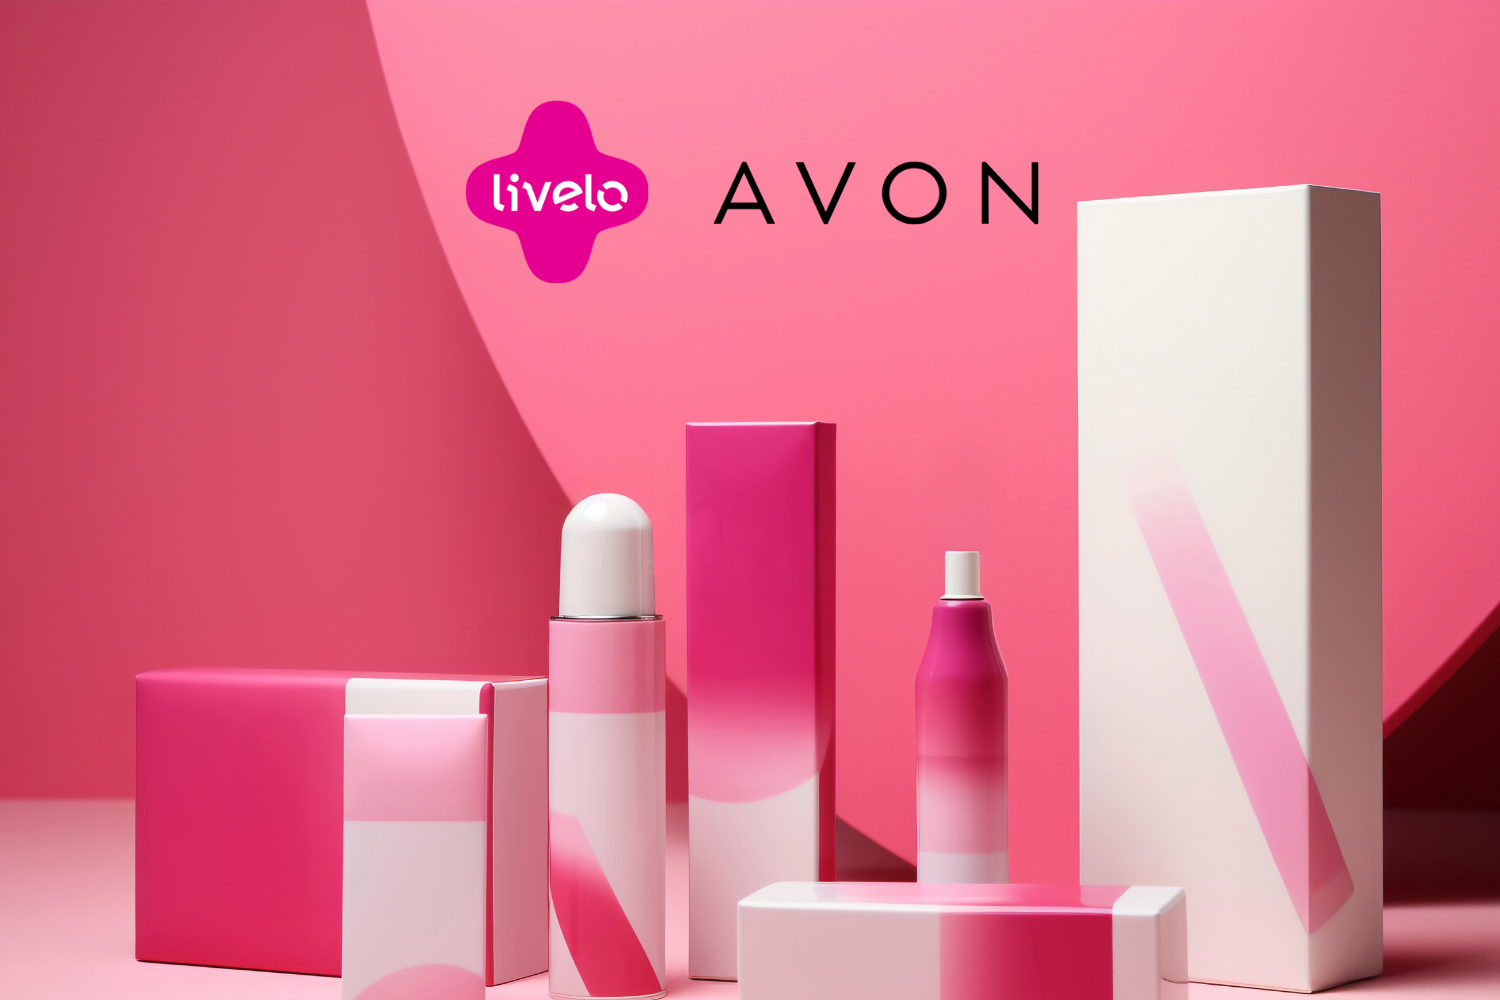 Cosméticos diversos em exposição diante de um fundo rosa, com as marcas Livelo e Avon no centro superior da imagem.